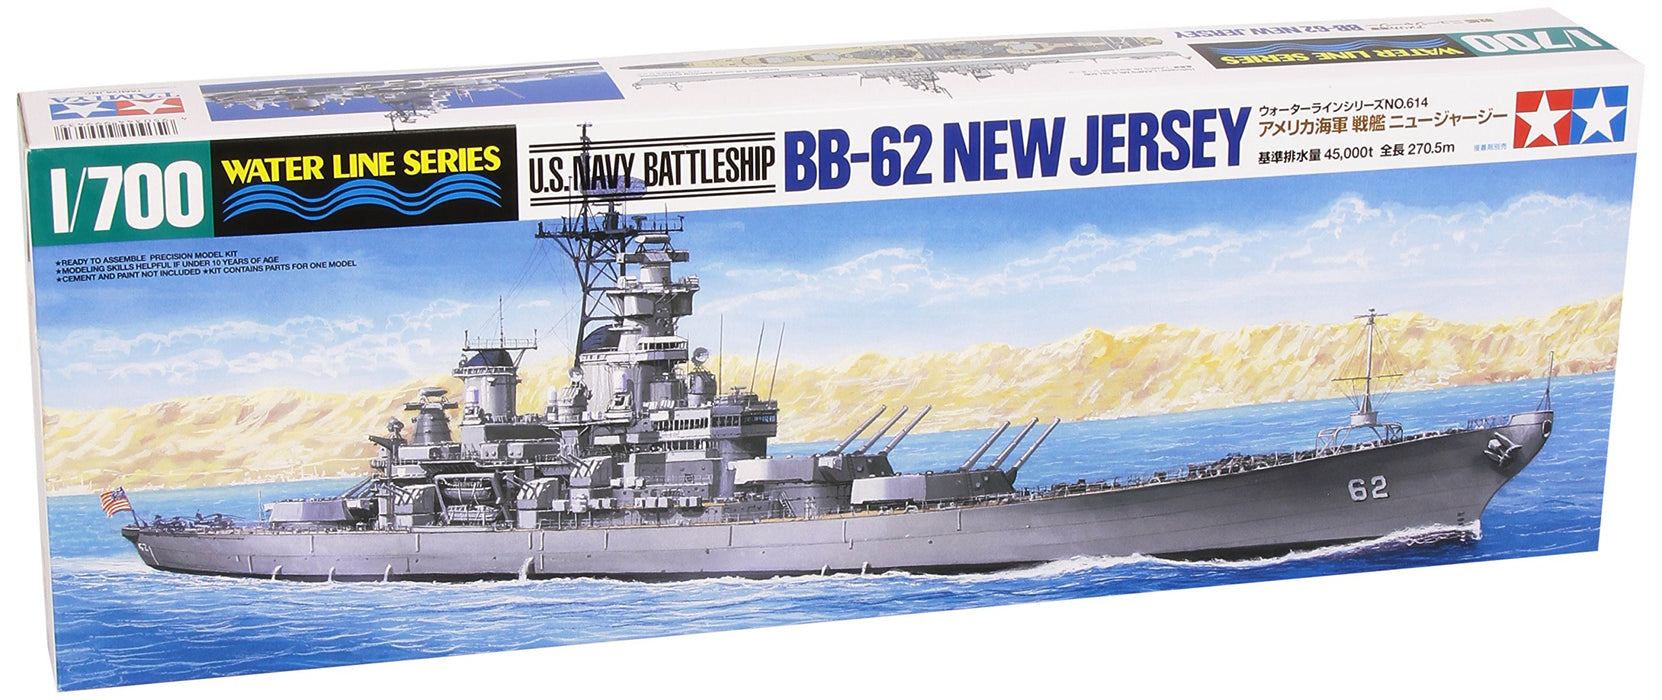 TAMIYA – cuirassé de la marine américaine Bb-62 New Jersey, Kit à l'échelle 1/700, 31614